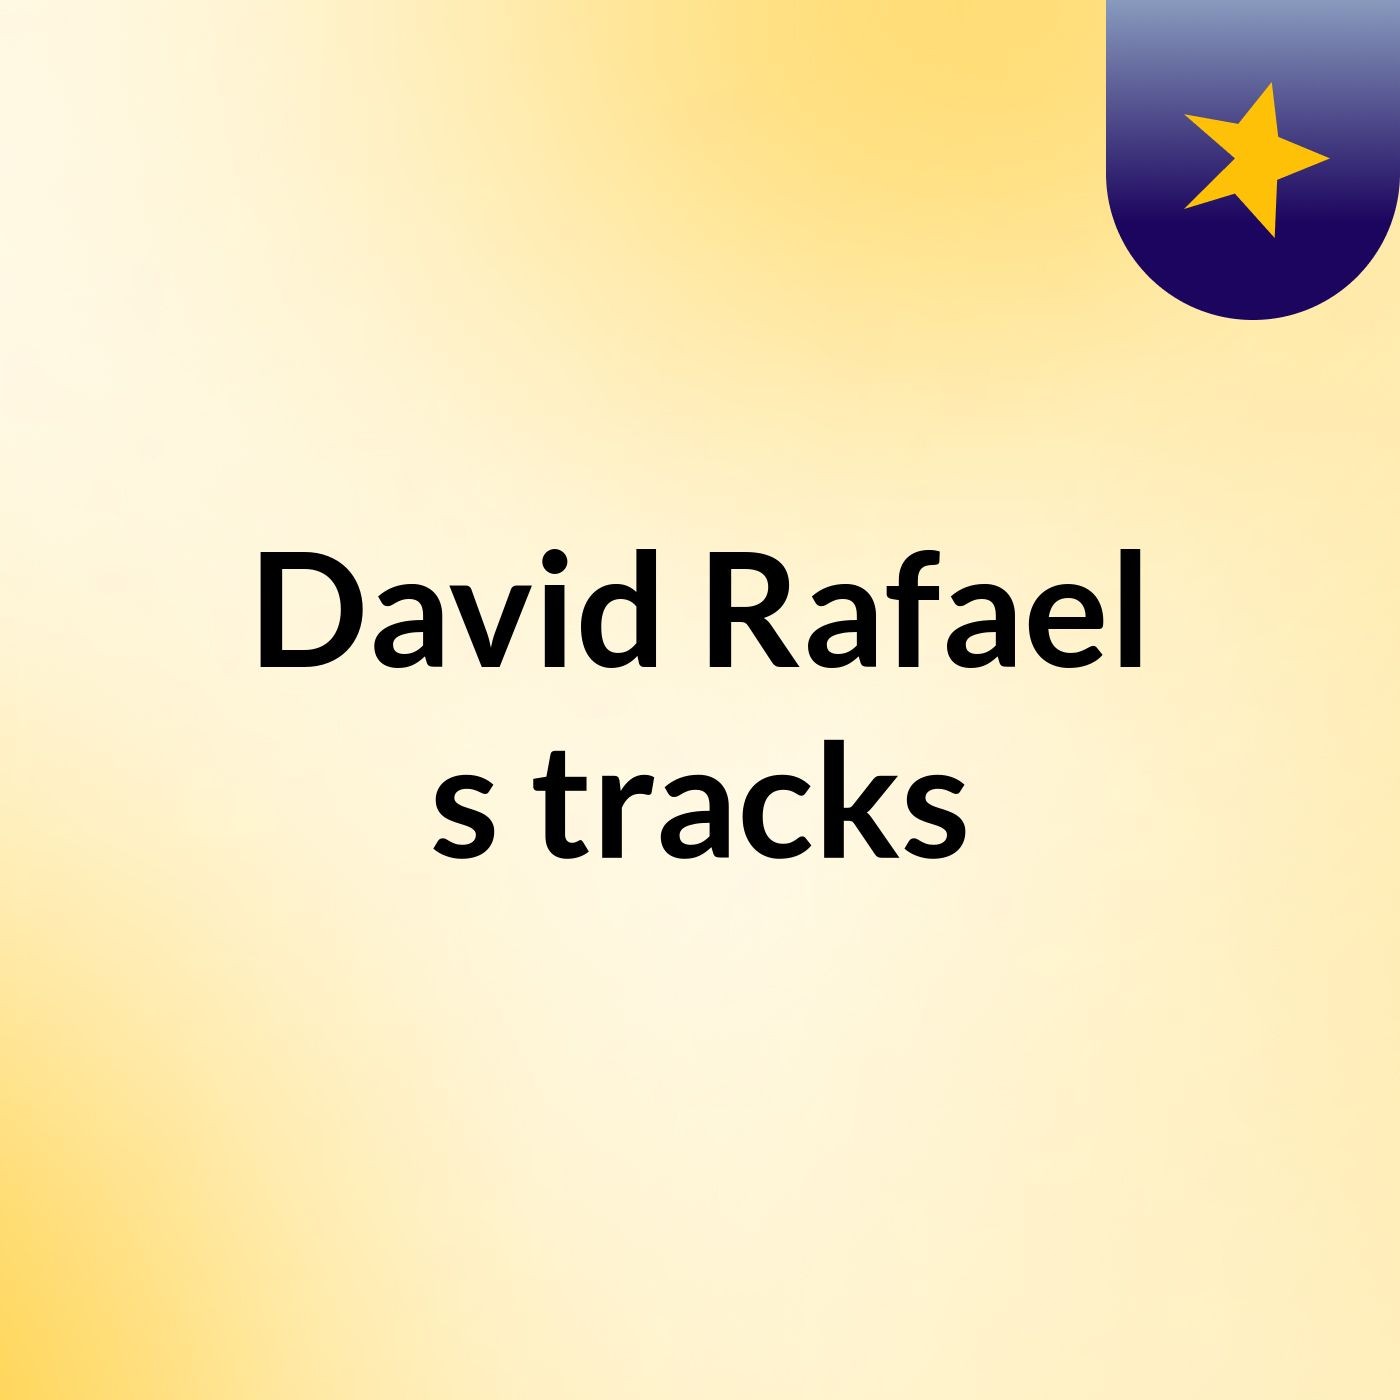 David Rafael's tracks